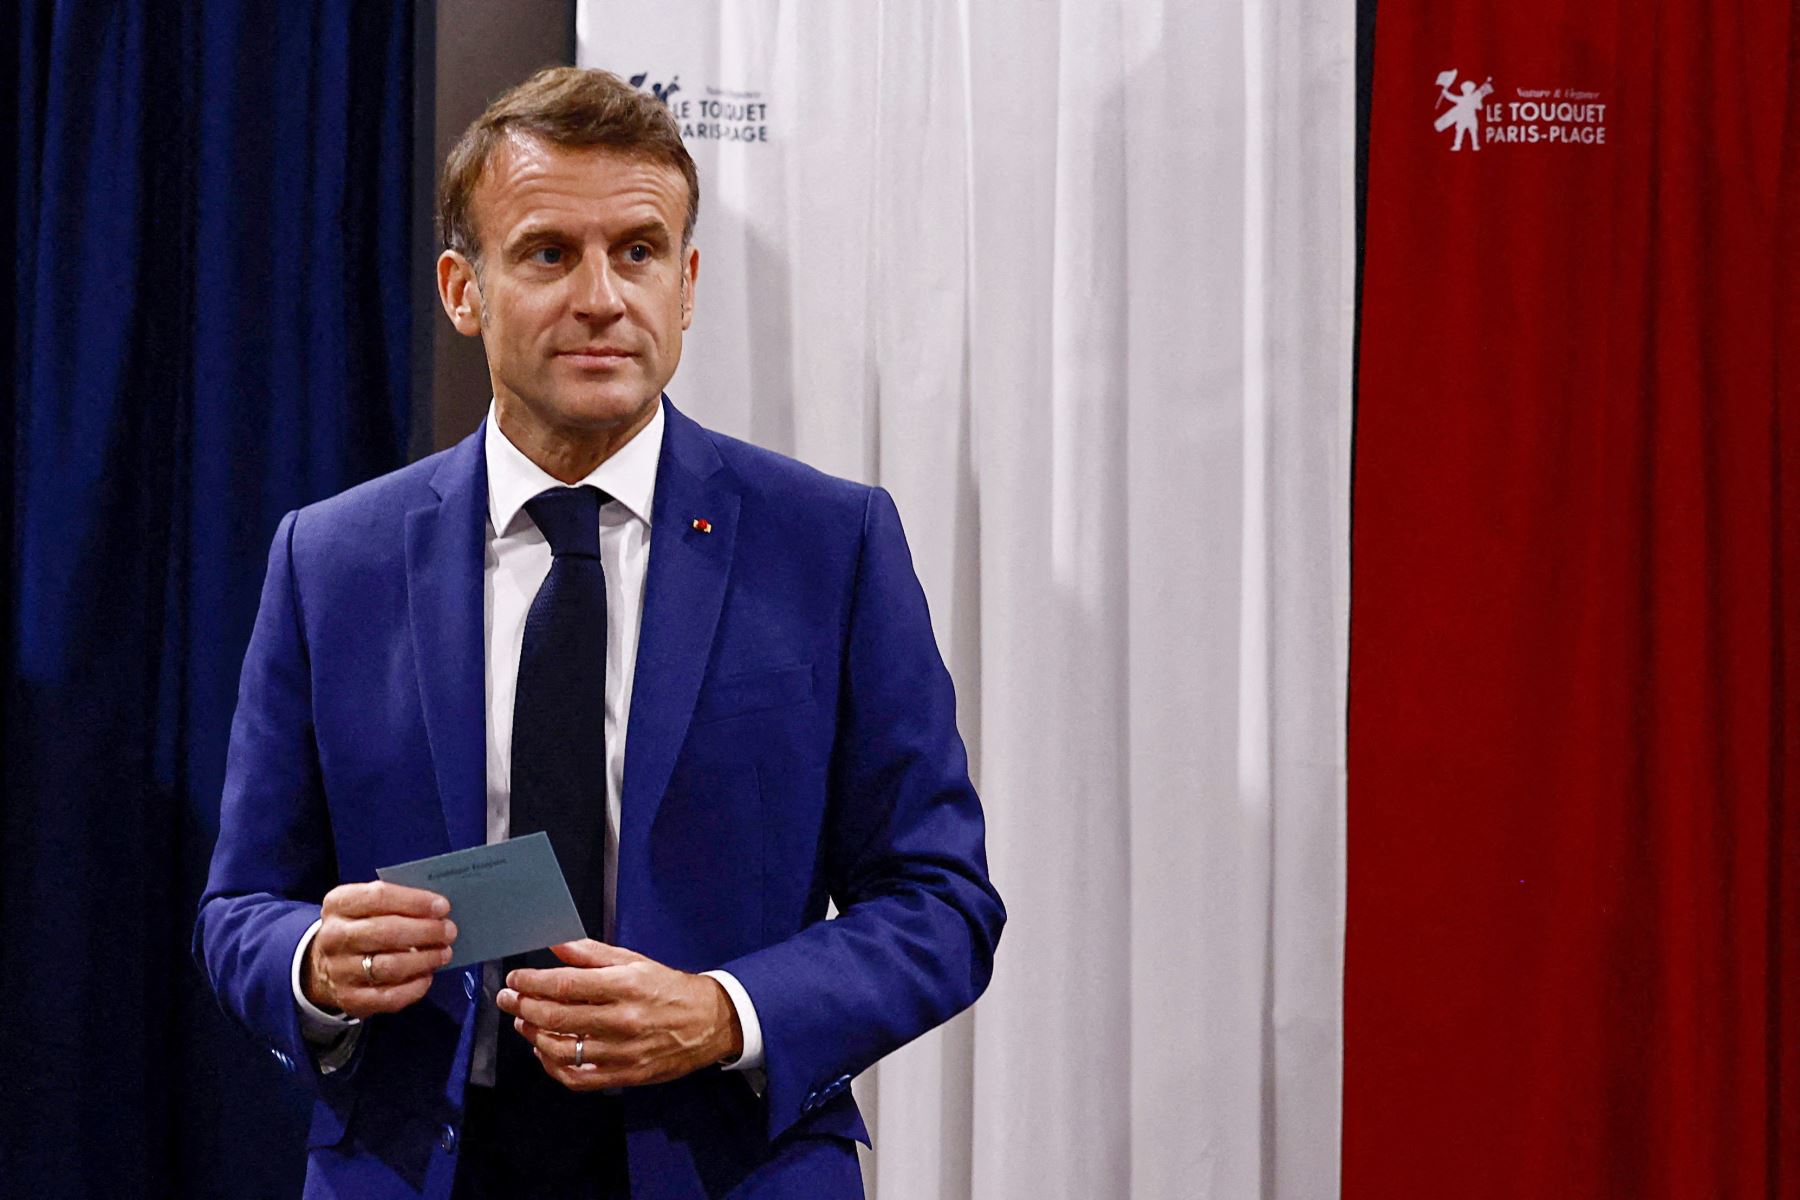 El presidente de Francia, Emmanuel Macron, abandona las urnas antes de emitir su voto en la primera vuelta de las elecciones parlamentarias. AFP